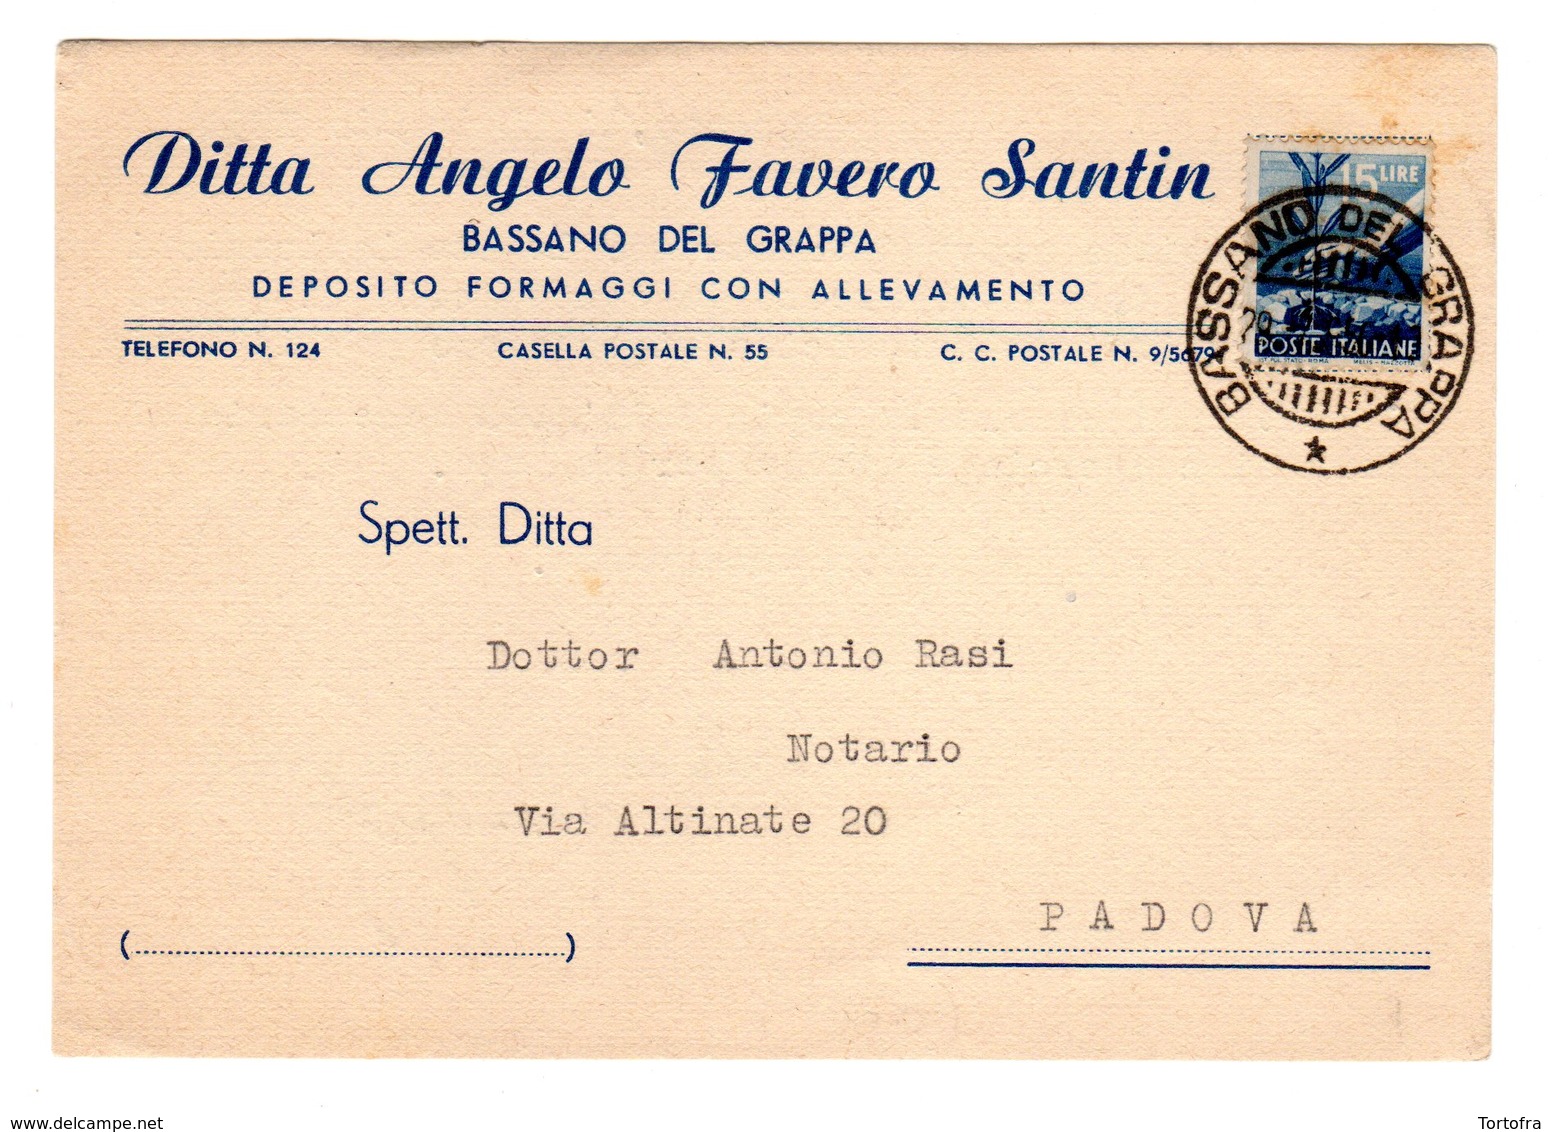 BASSANO DEL GRAPPA DITTA ANGELO FAVERO SANTIN DEPOSITO FORMAGGI CON ALLEVAMENTO  1950 - Vicenza